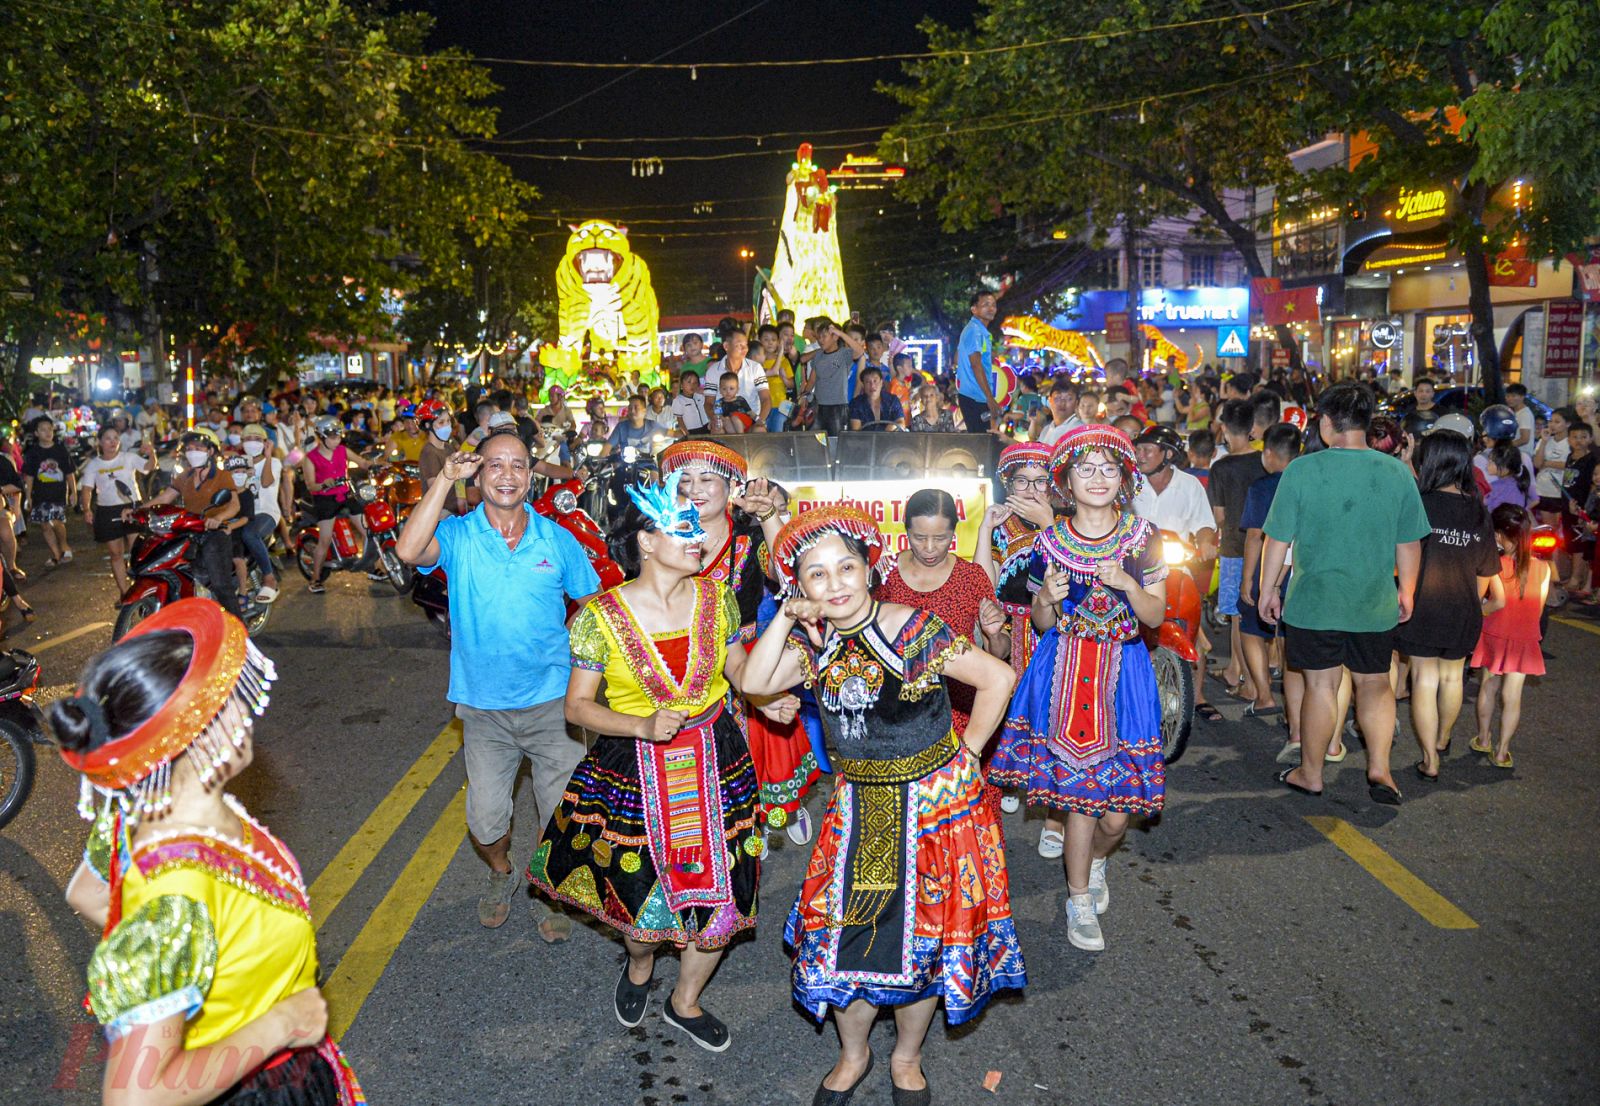 Tại Tuyên Quang, tết Trung thu được coi là lễ hội lớn nhất cả nước. Những ngày này, không khí trung thu tại đây đã rộn ràng khắp các con phố, thu hút rất đông người dân và du khách tứ phương.